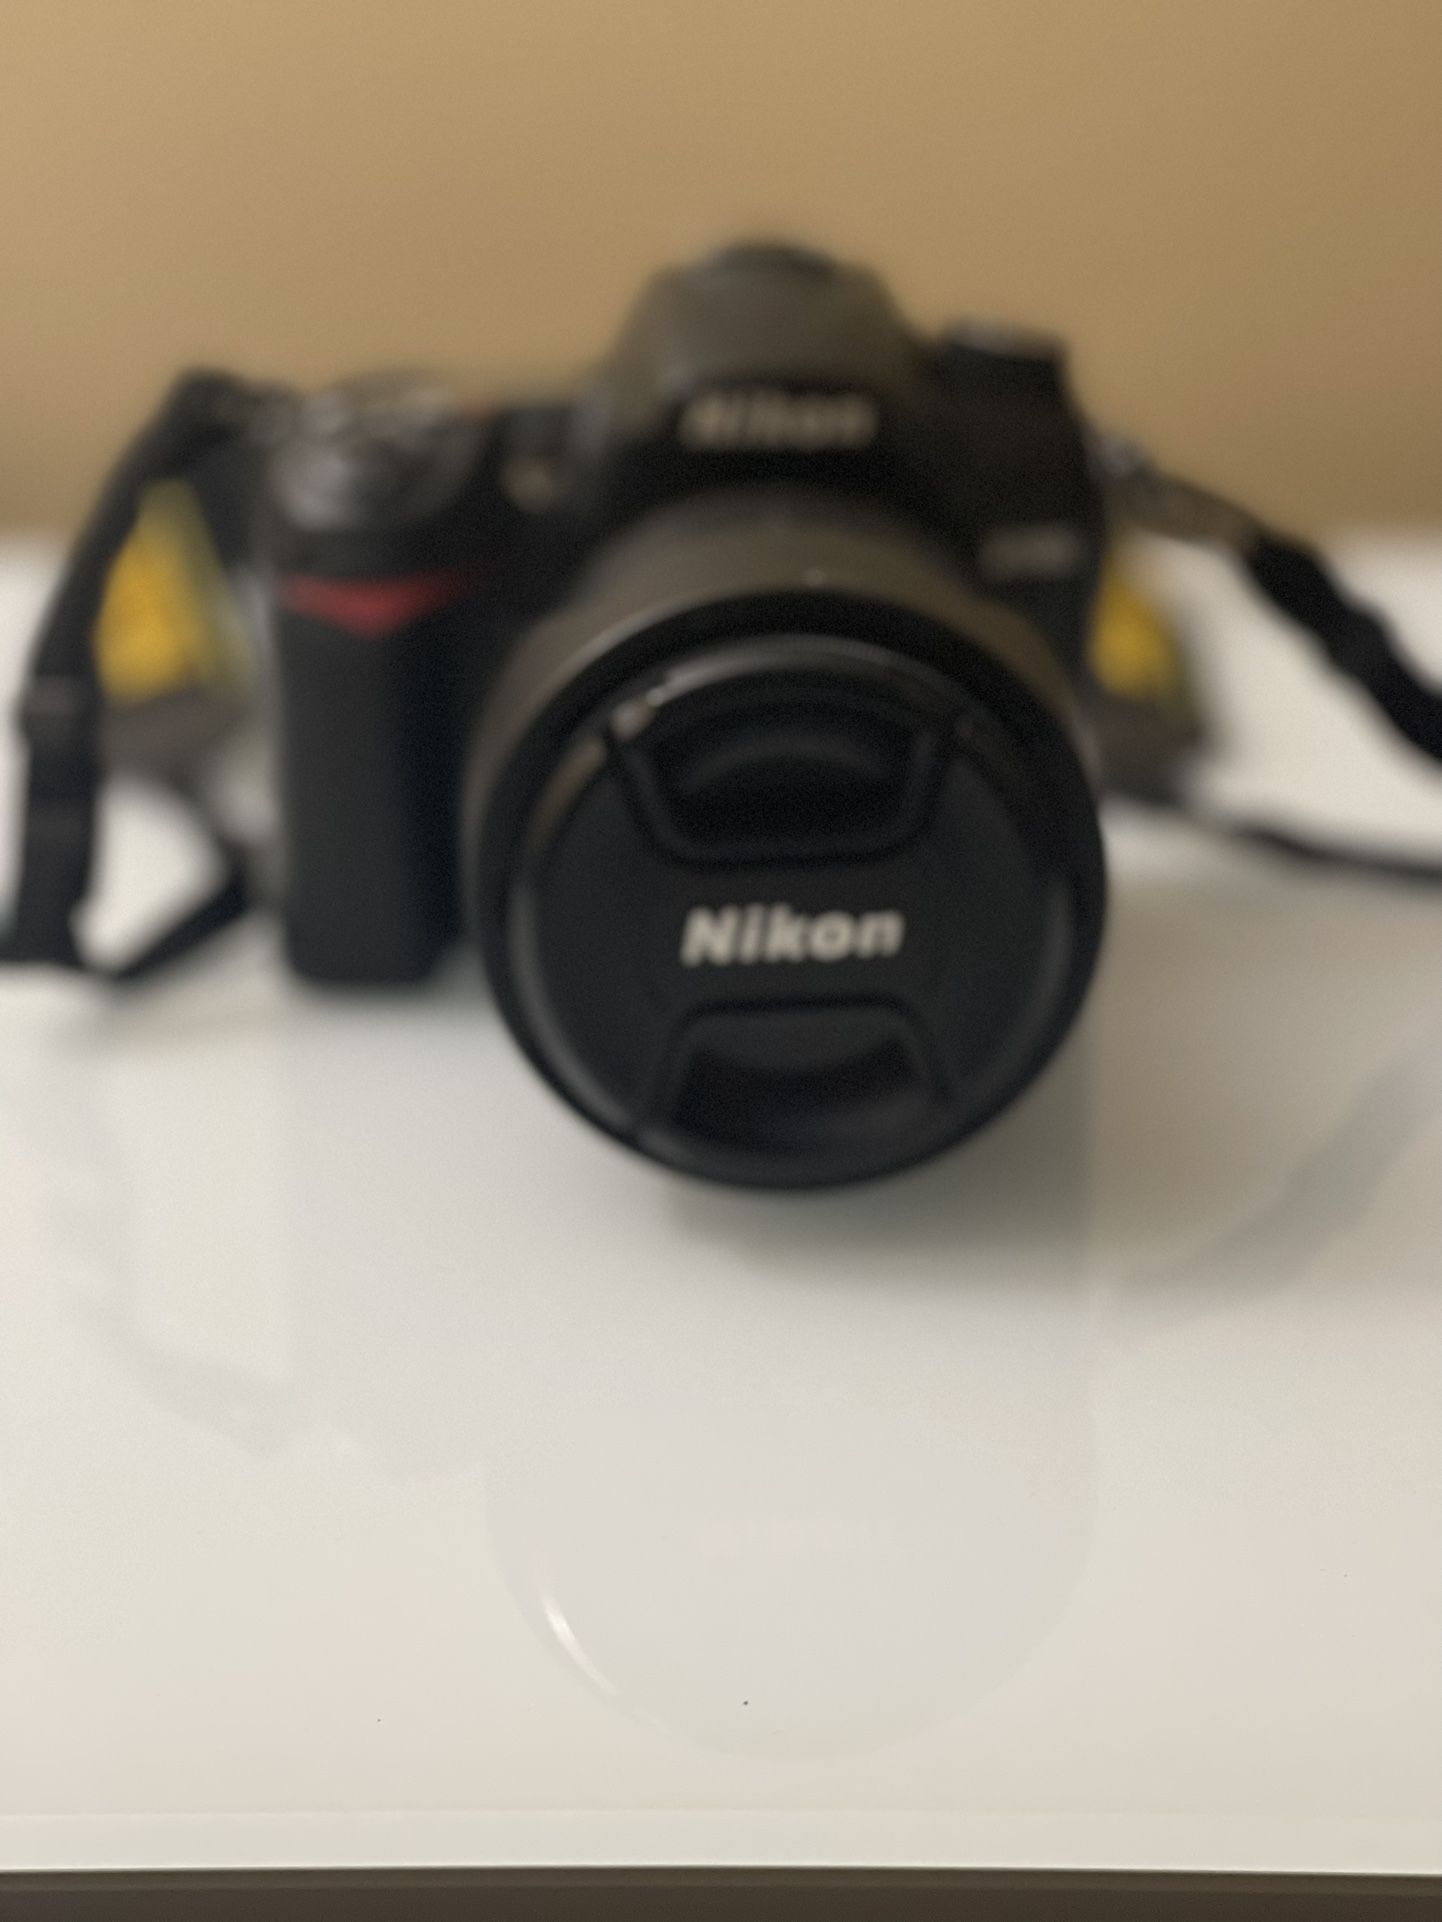 Nikon D7000 DSLR & Nikon 18-105 mm Lens